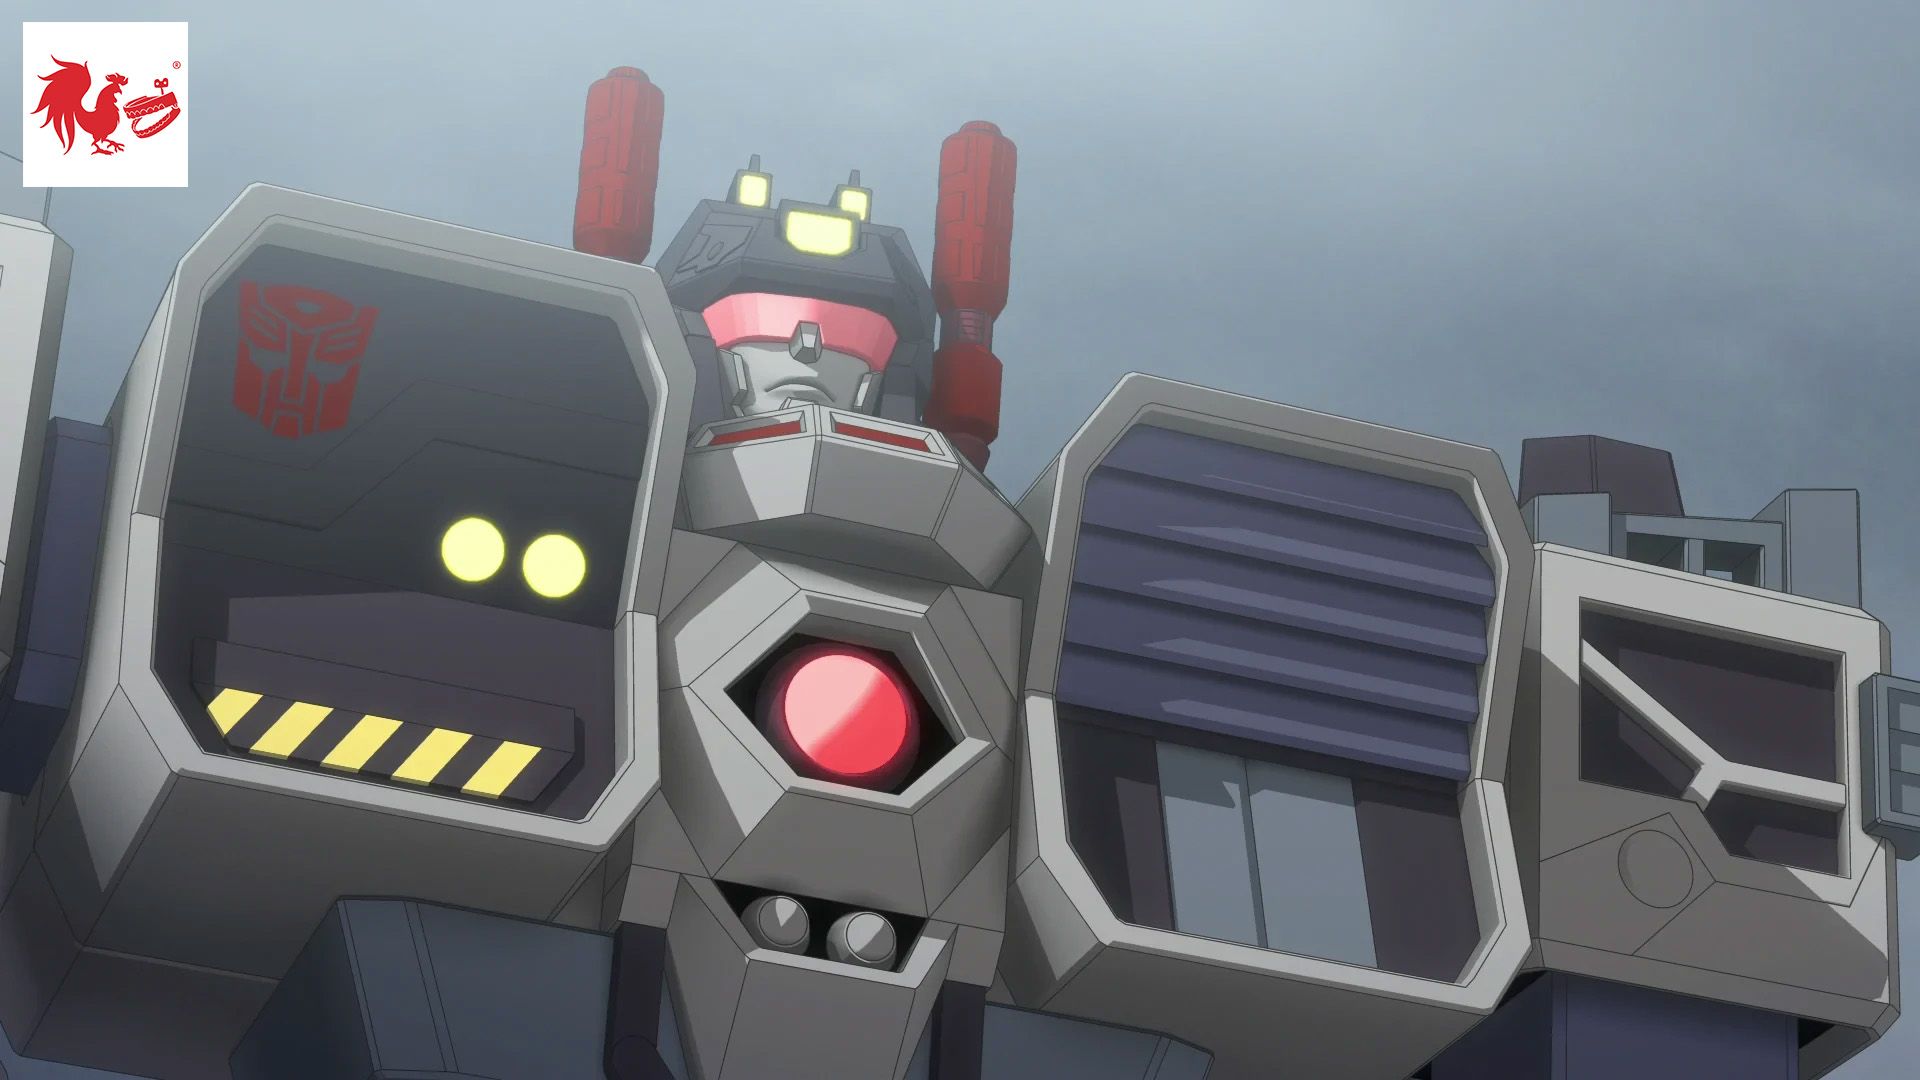 Transformers: Prime, S02 E09, FULL Episode